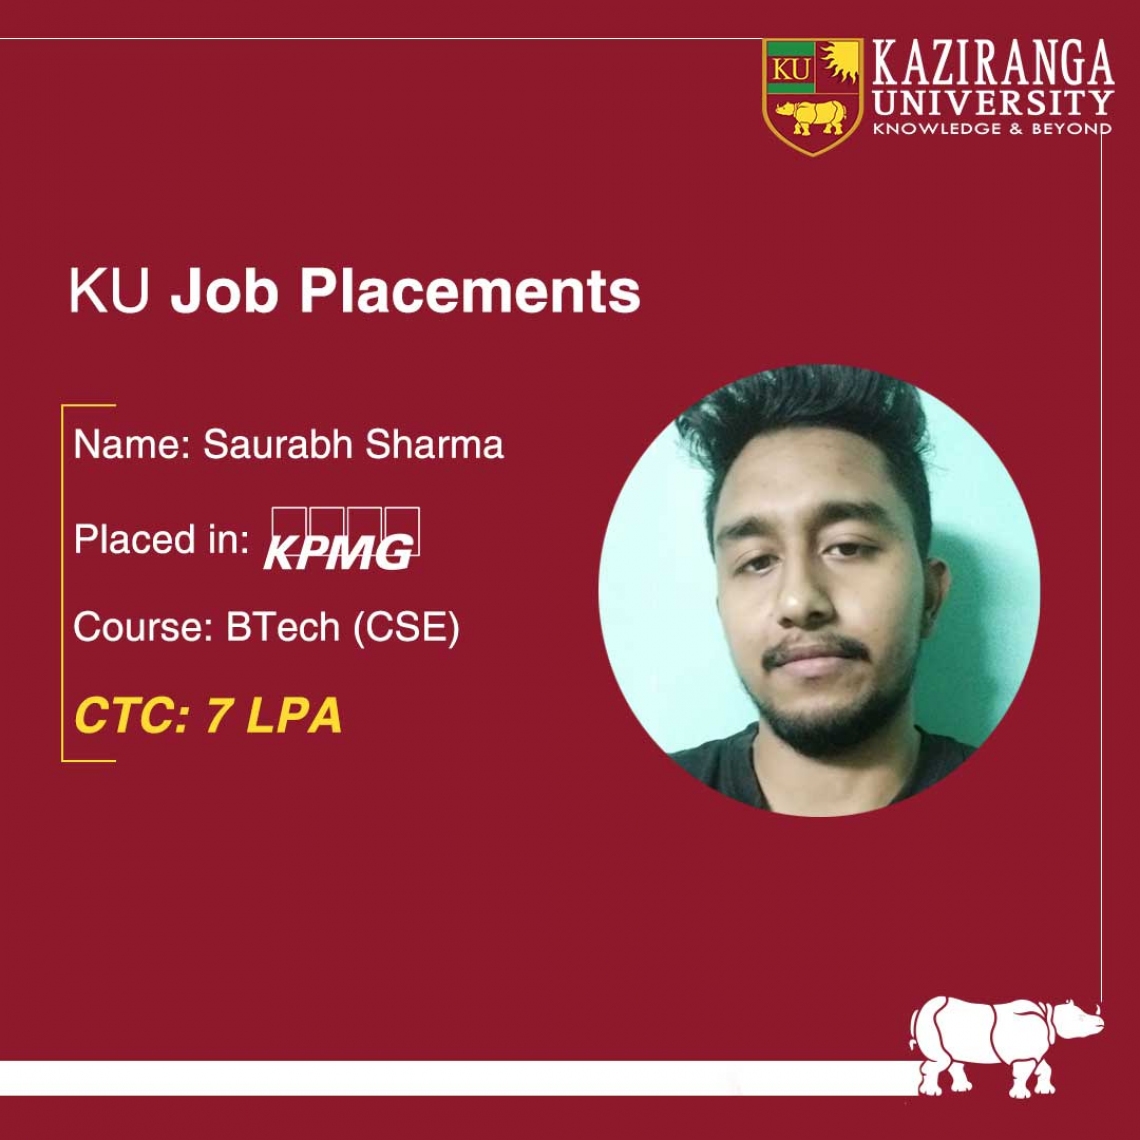 KU CSE Student placed at KPMG as Data Analyst